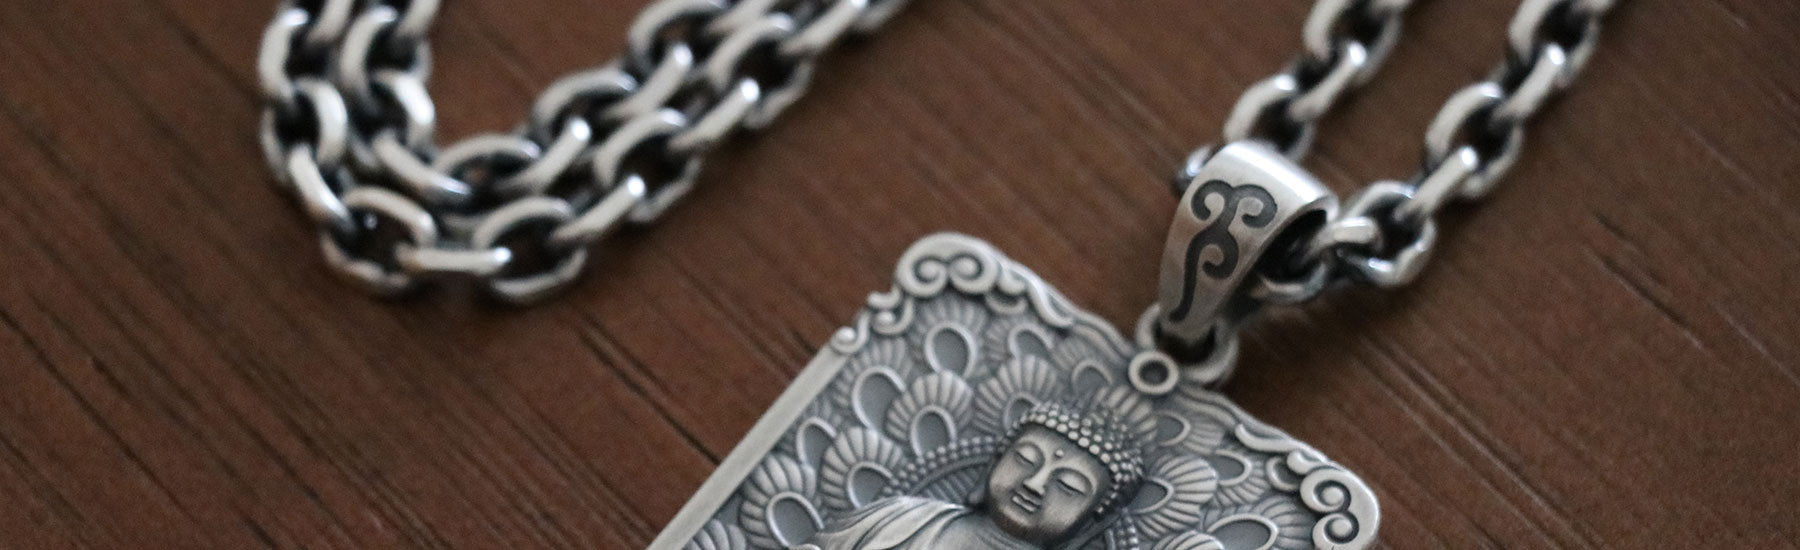 Buddha Chain Necklaces - mantrapiece.com